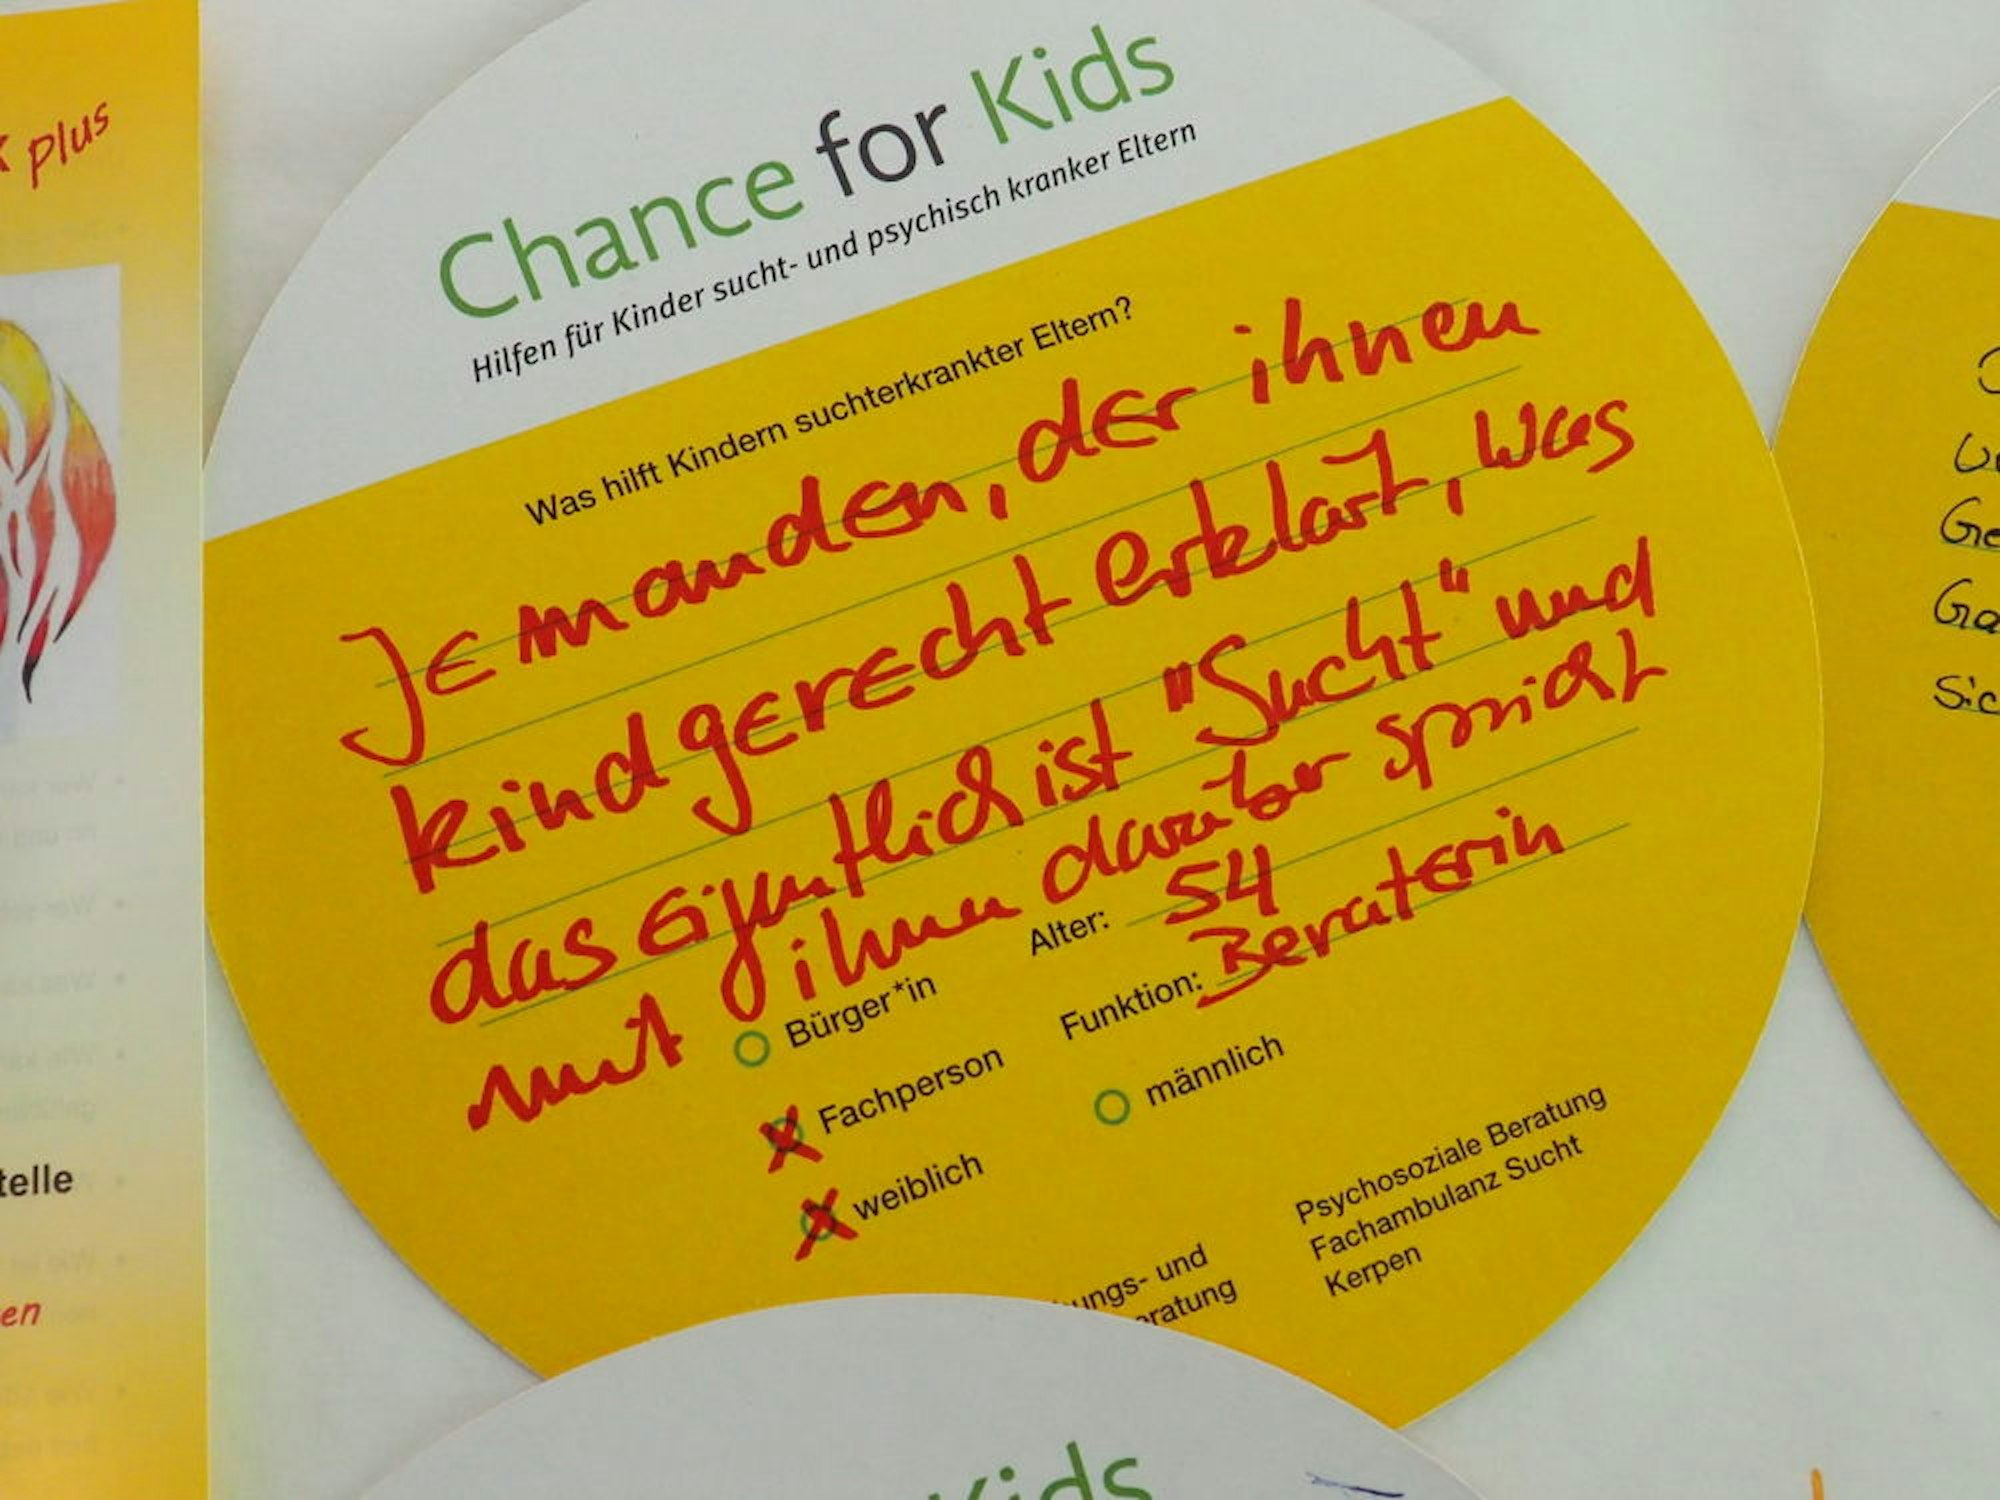 Rund 180 Karten sind ausgefüllt worden mit Vorschlägen, was Kindern suchtkranker Eltern helfen könnte.